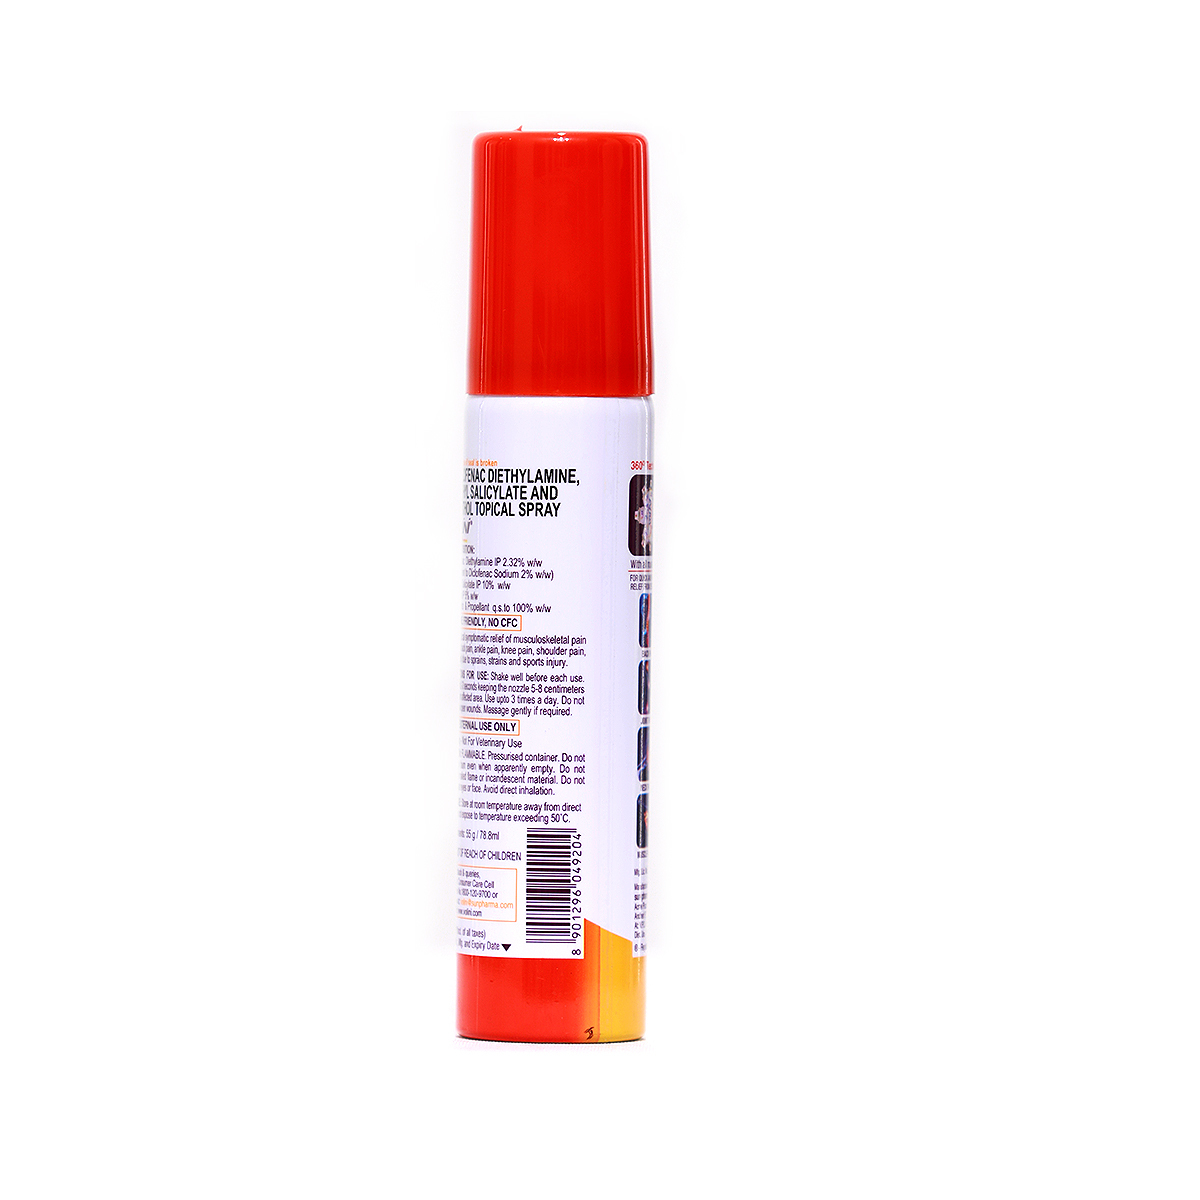 Volni Pain Relief Spray Maxx 55g